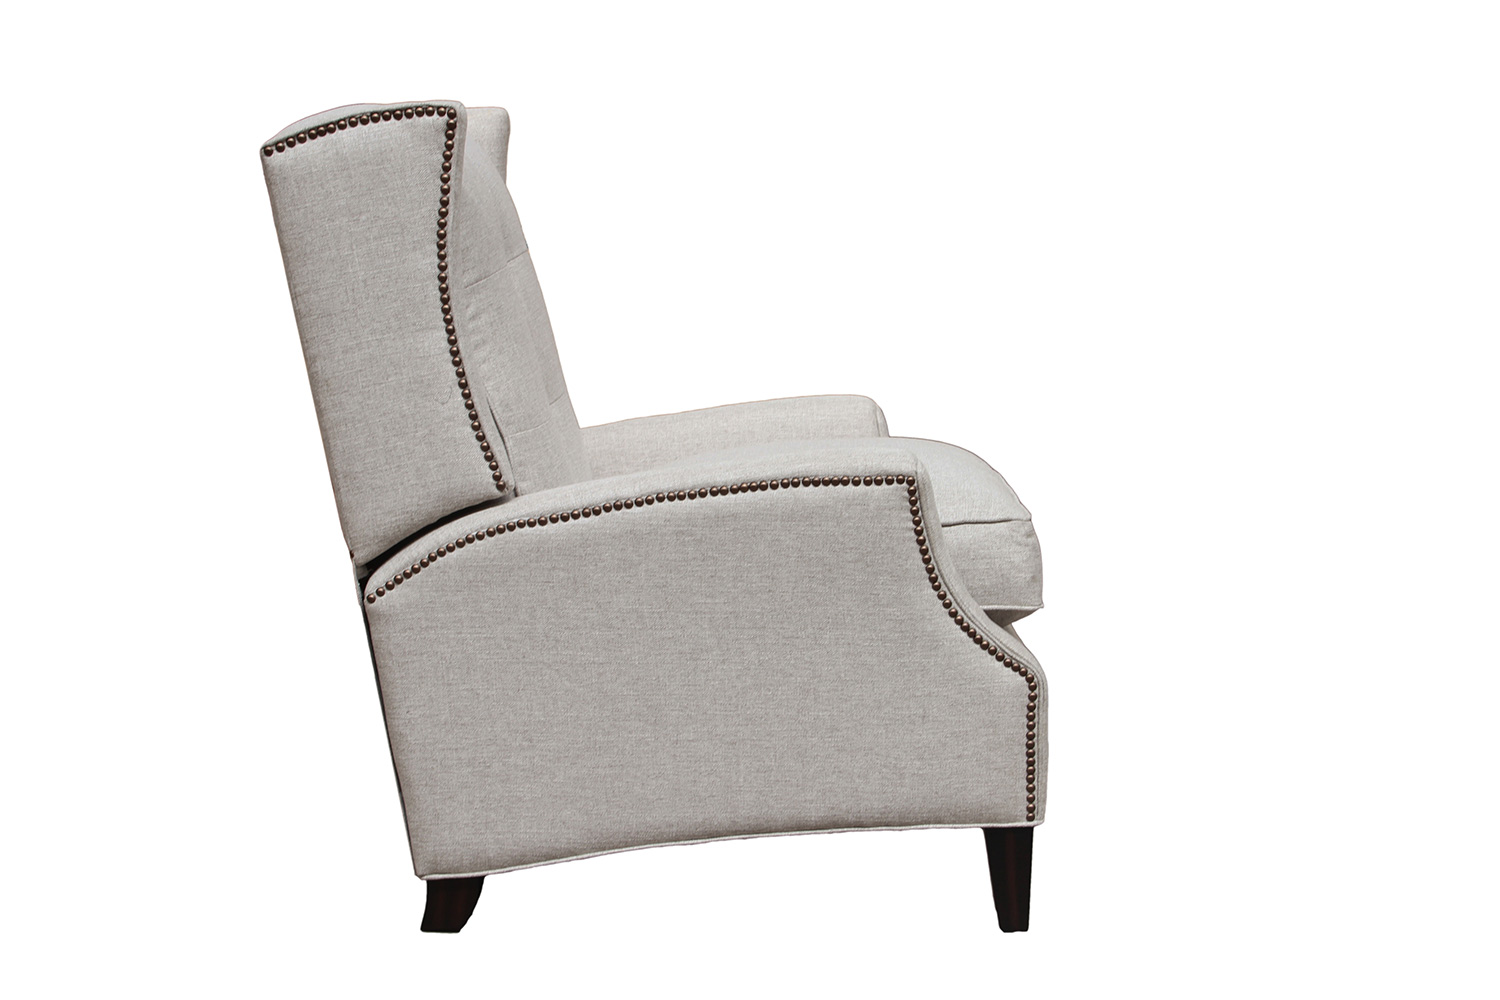 Barcalounger Lincoln Recliner Chair - Linen fabric